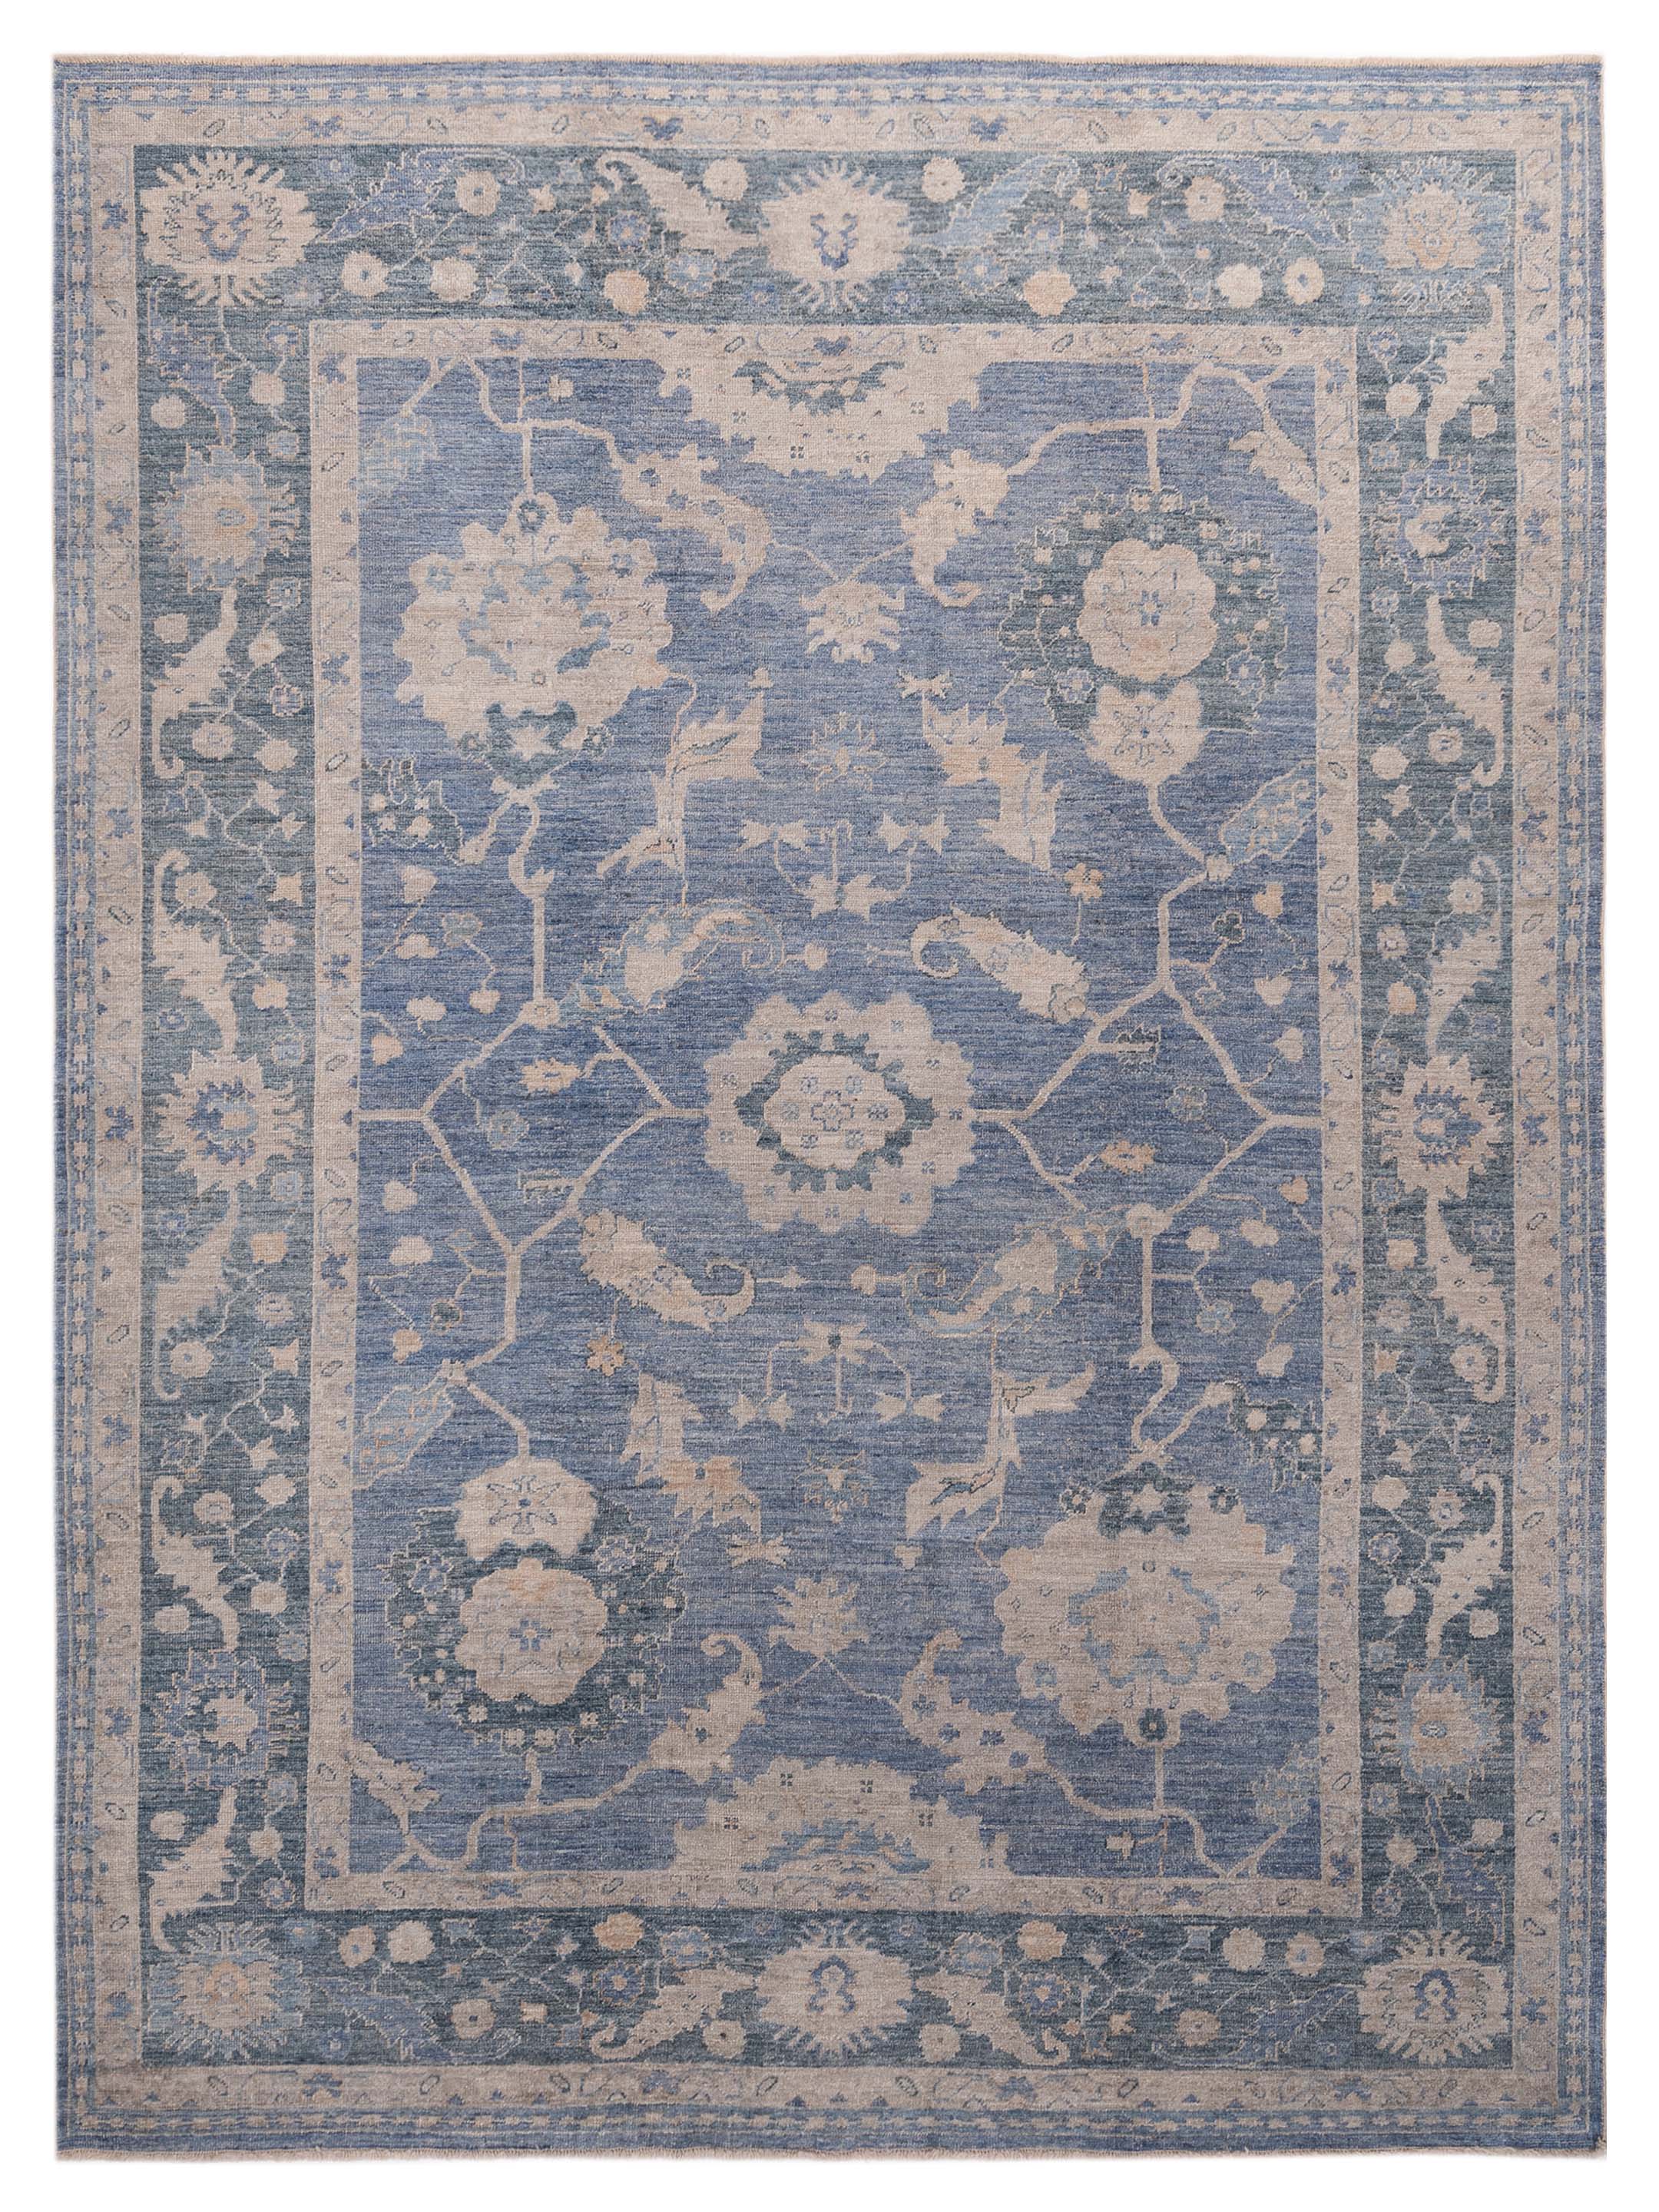 Blue Ivory hand-knotted Turkish oushak rug